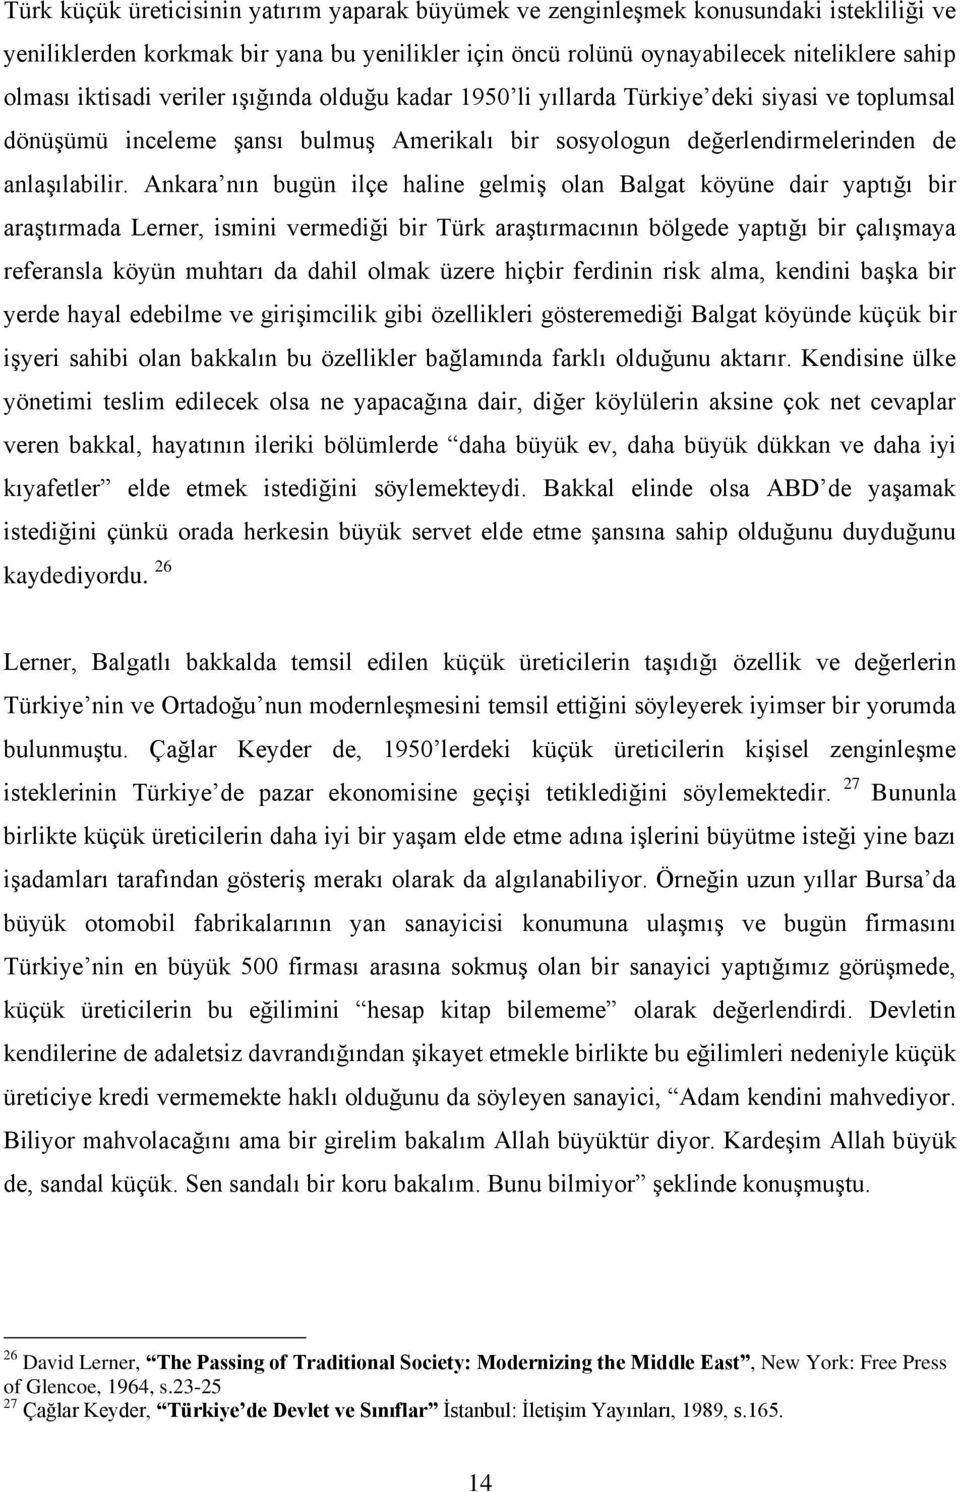 Ankara nın bugün ilçe haline gelmiş olan Balgat köyüne dair yaptığı bir araştırmada Lerner, ismini vermediği bir Türk araştırmacının bölgede yaptığı bir çalışmaya referansla köyün muhtarı da dahil